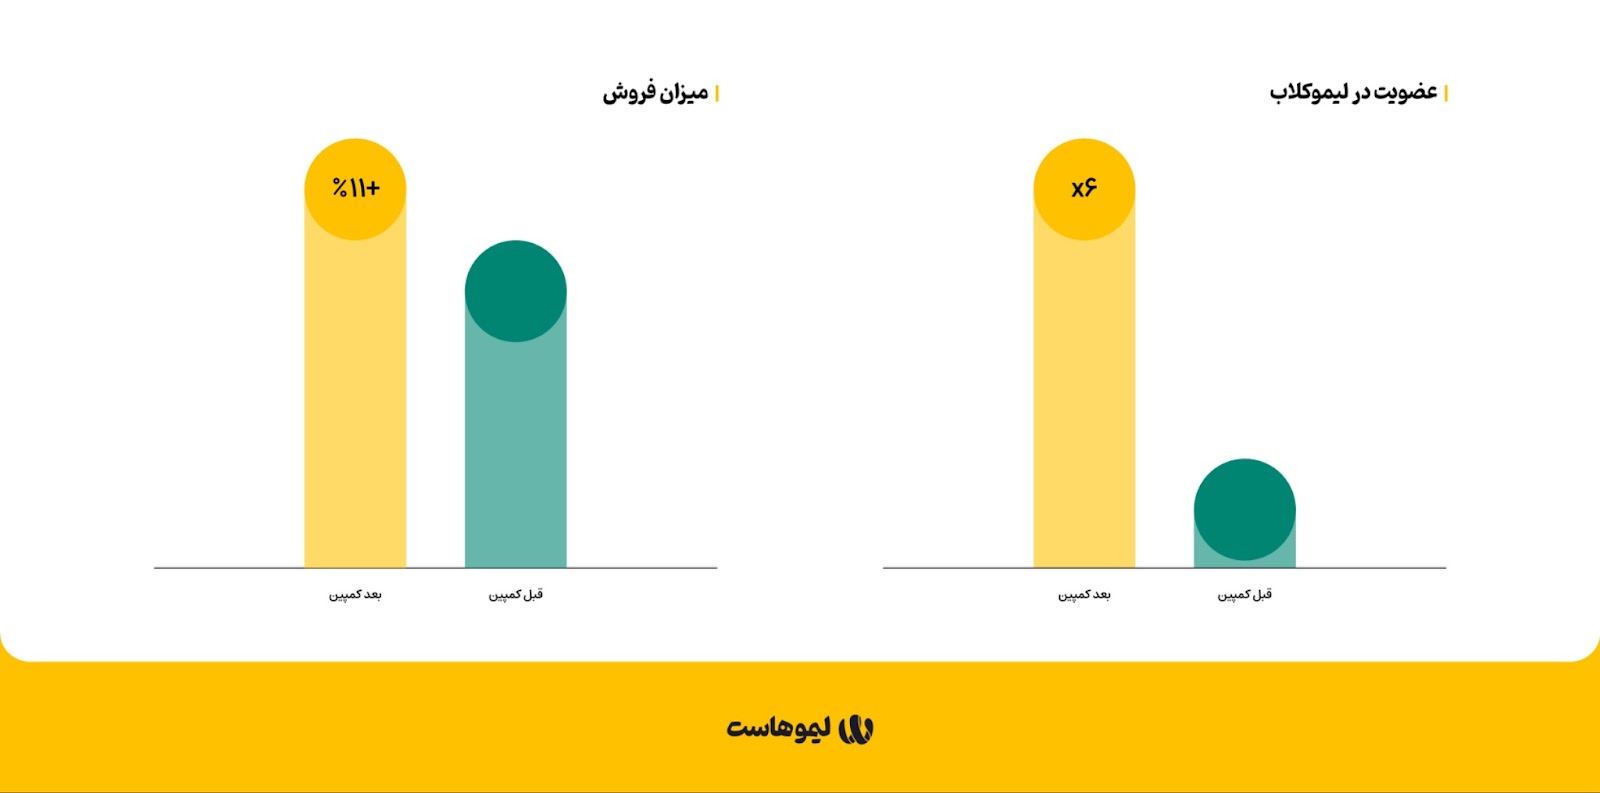 گزارش کمپین «هزاروچهارصدسین» لیموهاست؛ افزایش ۱۱ درصدی فروش 3